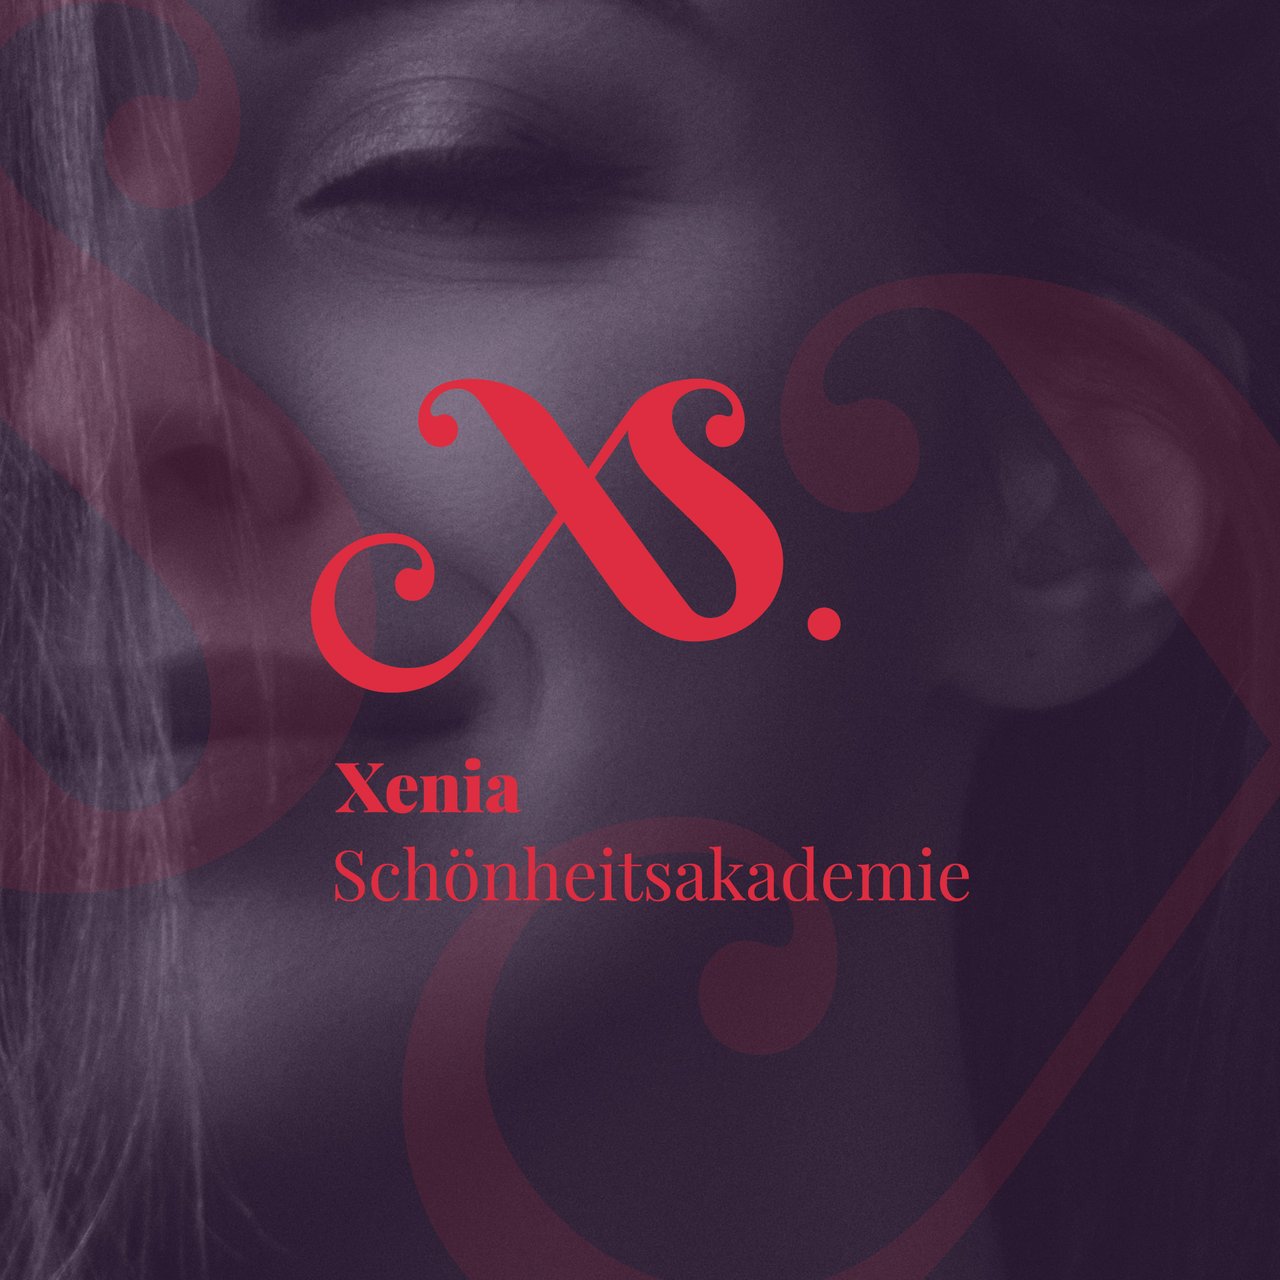 Айдентика для "Xenia Schönheitsakademie"
_
Identity for "Xenia Schönheitsakademie"